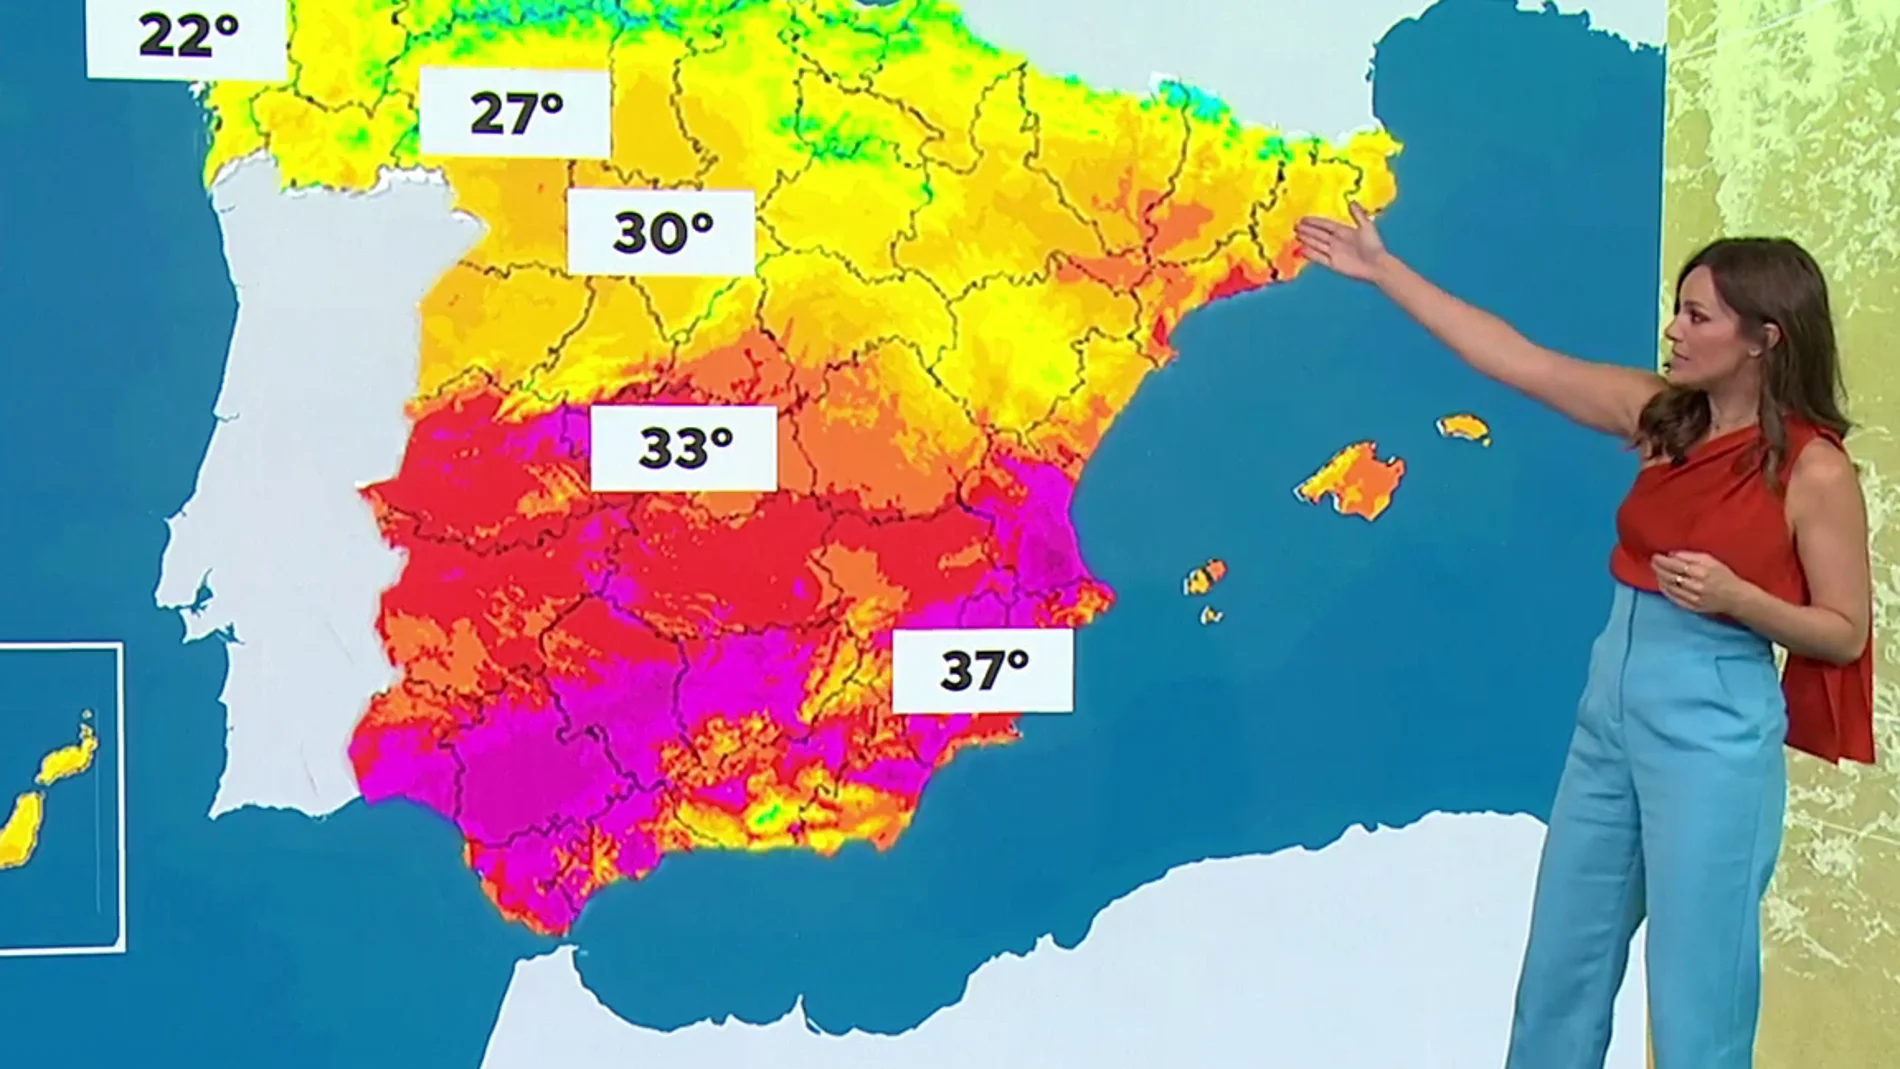 La previsión del tiempo hoy: Ascenso de temperaturas con lluvias en Asturias, Galicia y Cantabria 